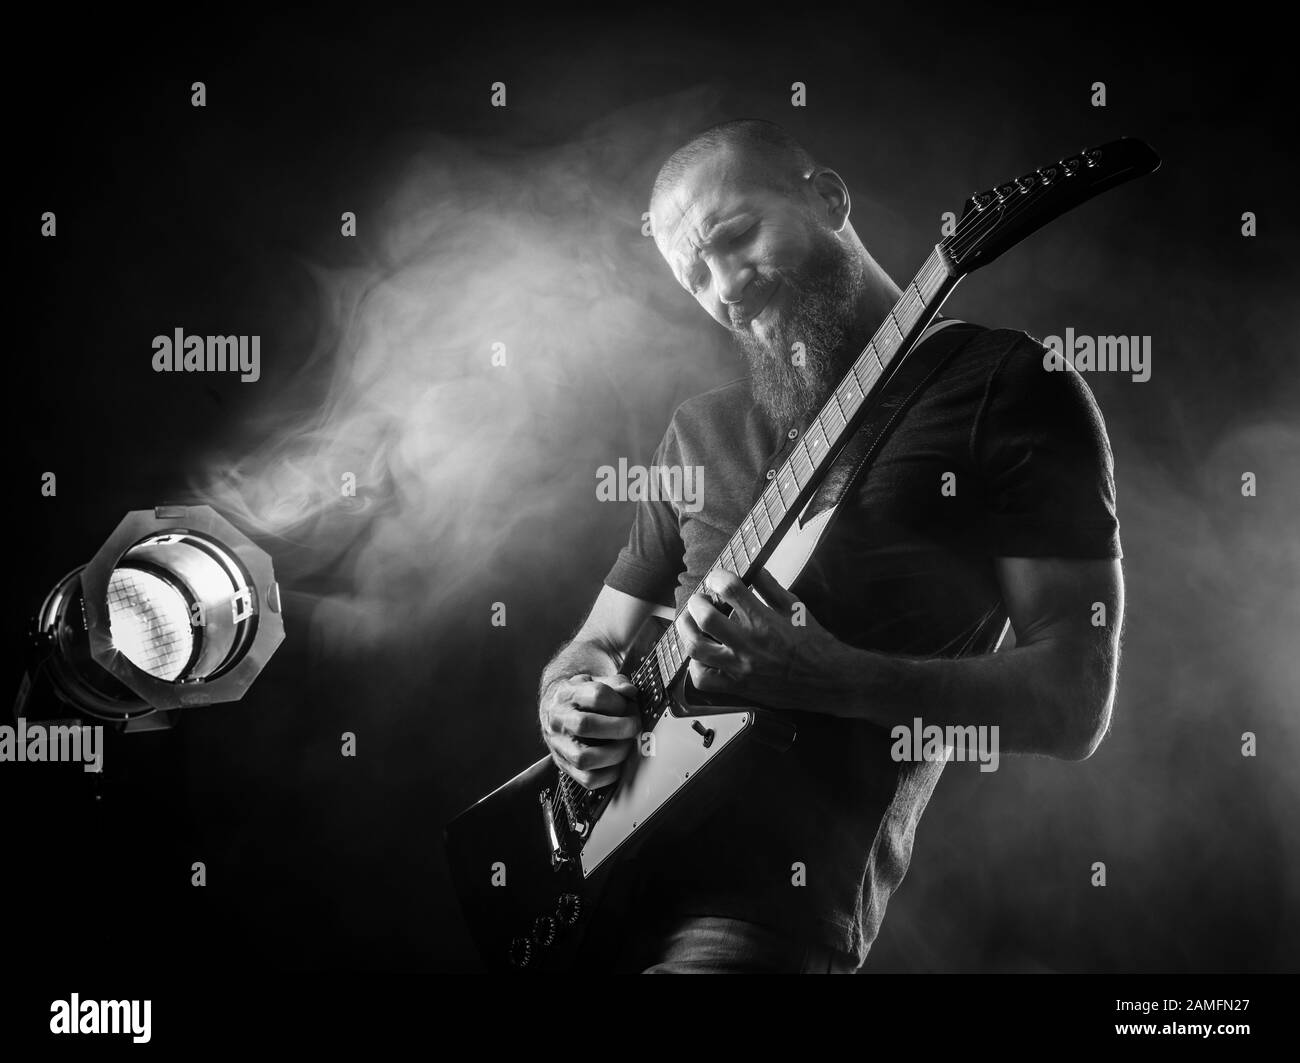 Foto di un uomo con bearded che suona la chitarra elettrica sul palco davanti ai faretti. Foto Stock